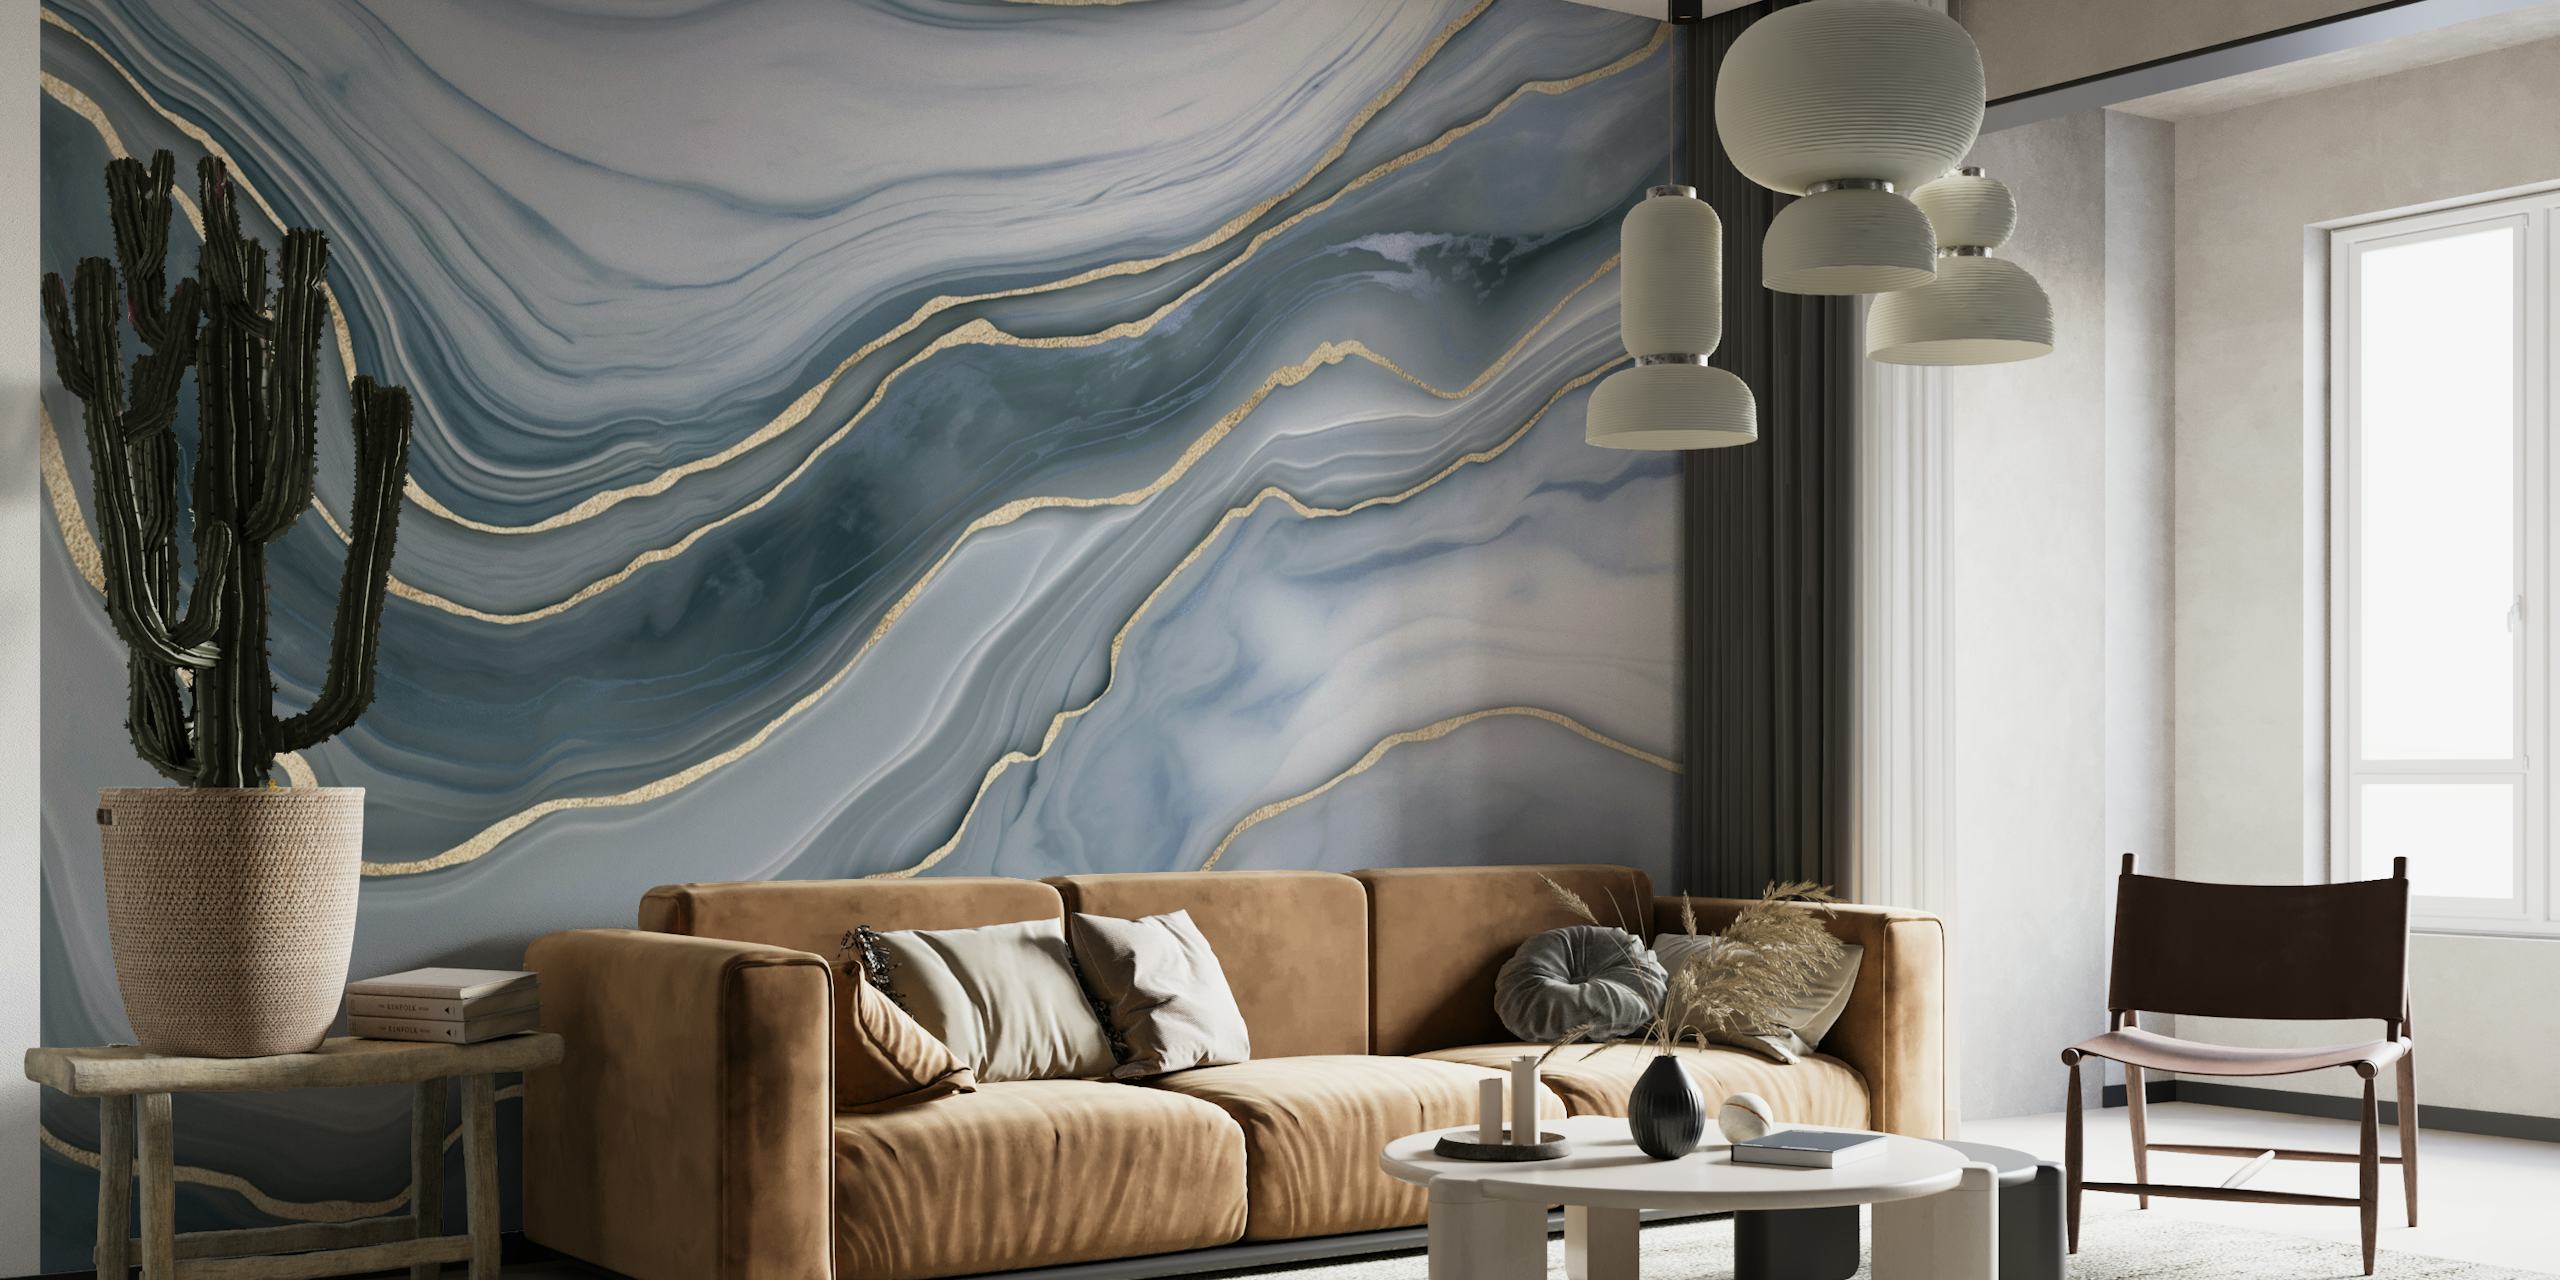 Luxe muurschildering met blauw en goud marmerpatroon voor een chique interieur